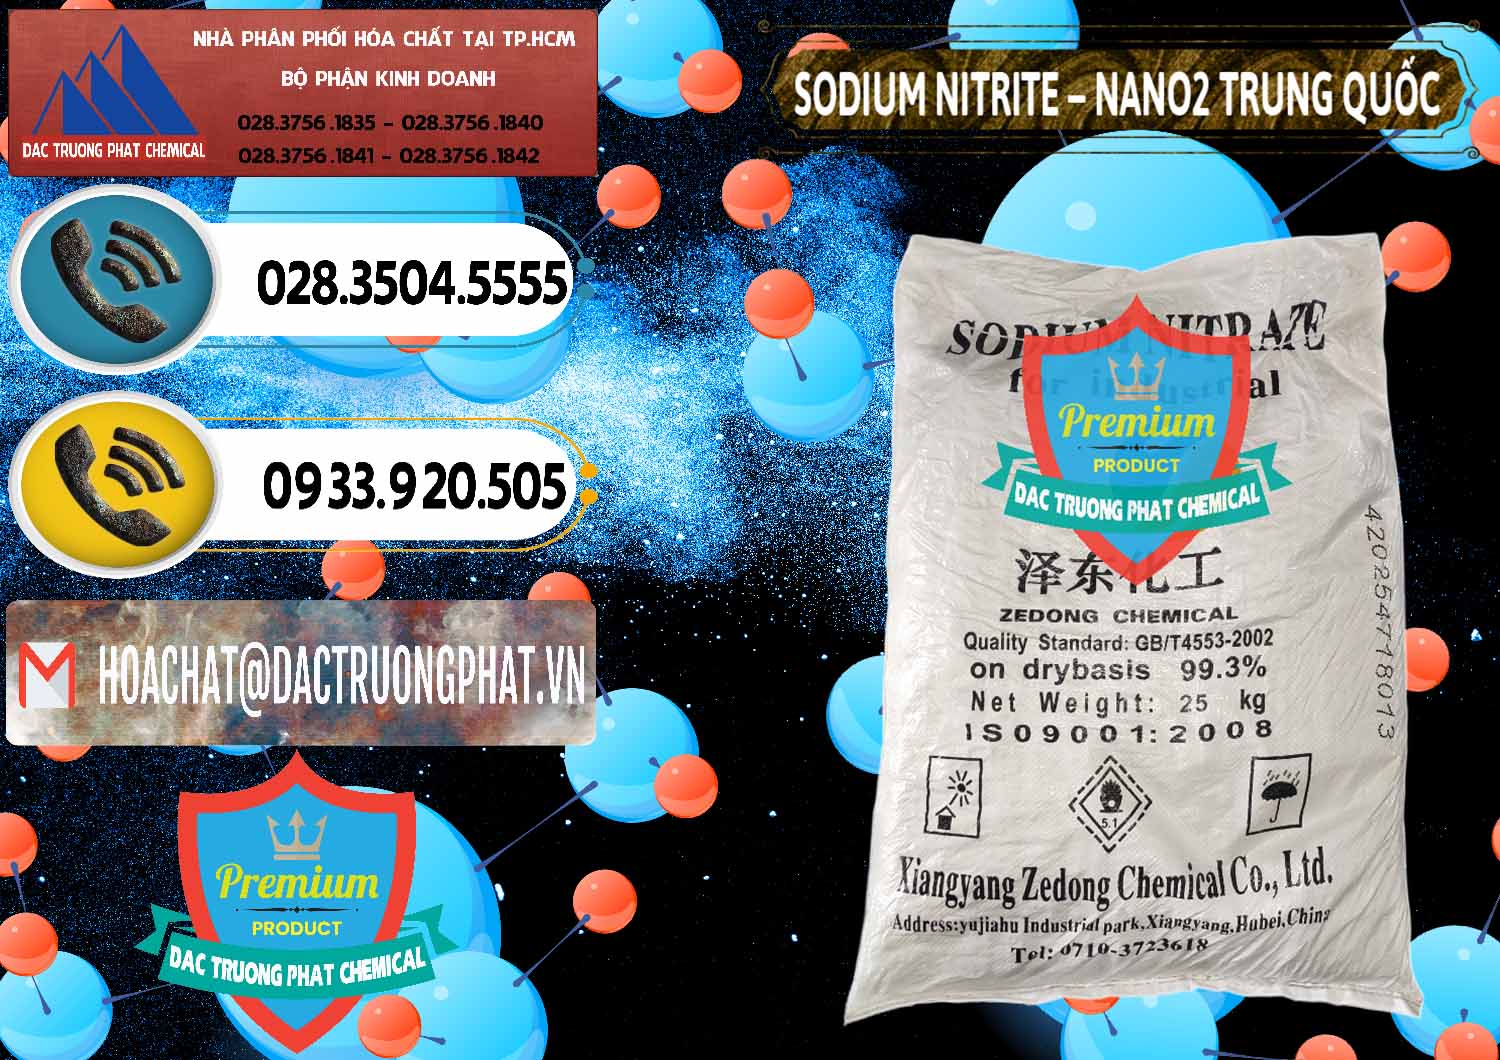 Đơn vị chuyên bán _ cung ứng Sodium Nitrite - NANO2 Zedong Trung Quốc China - 0149 - Công ty kinh doanh ( cung cấp ) hóa chất tại TP.HCM - hoachatdetnhuom.vn